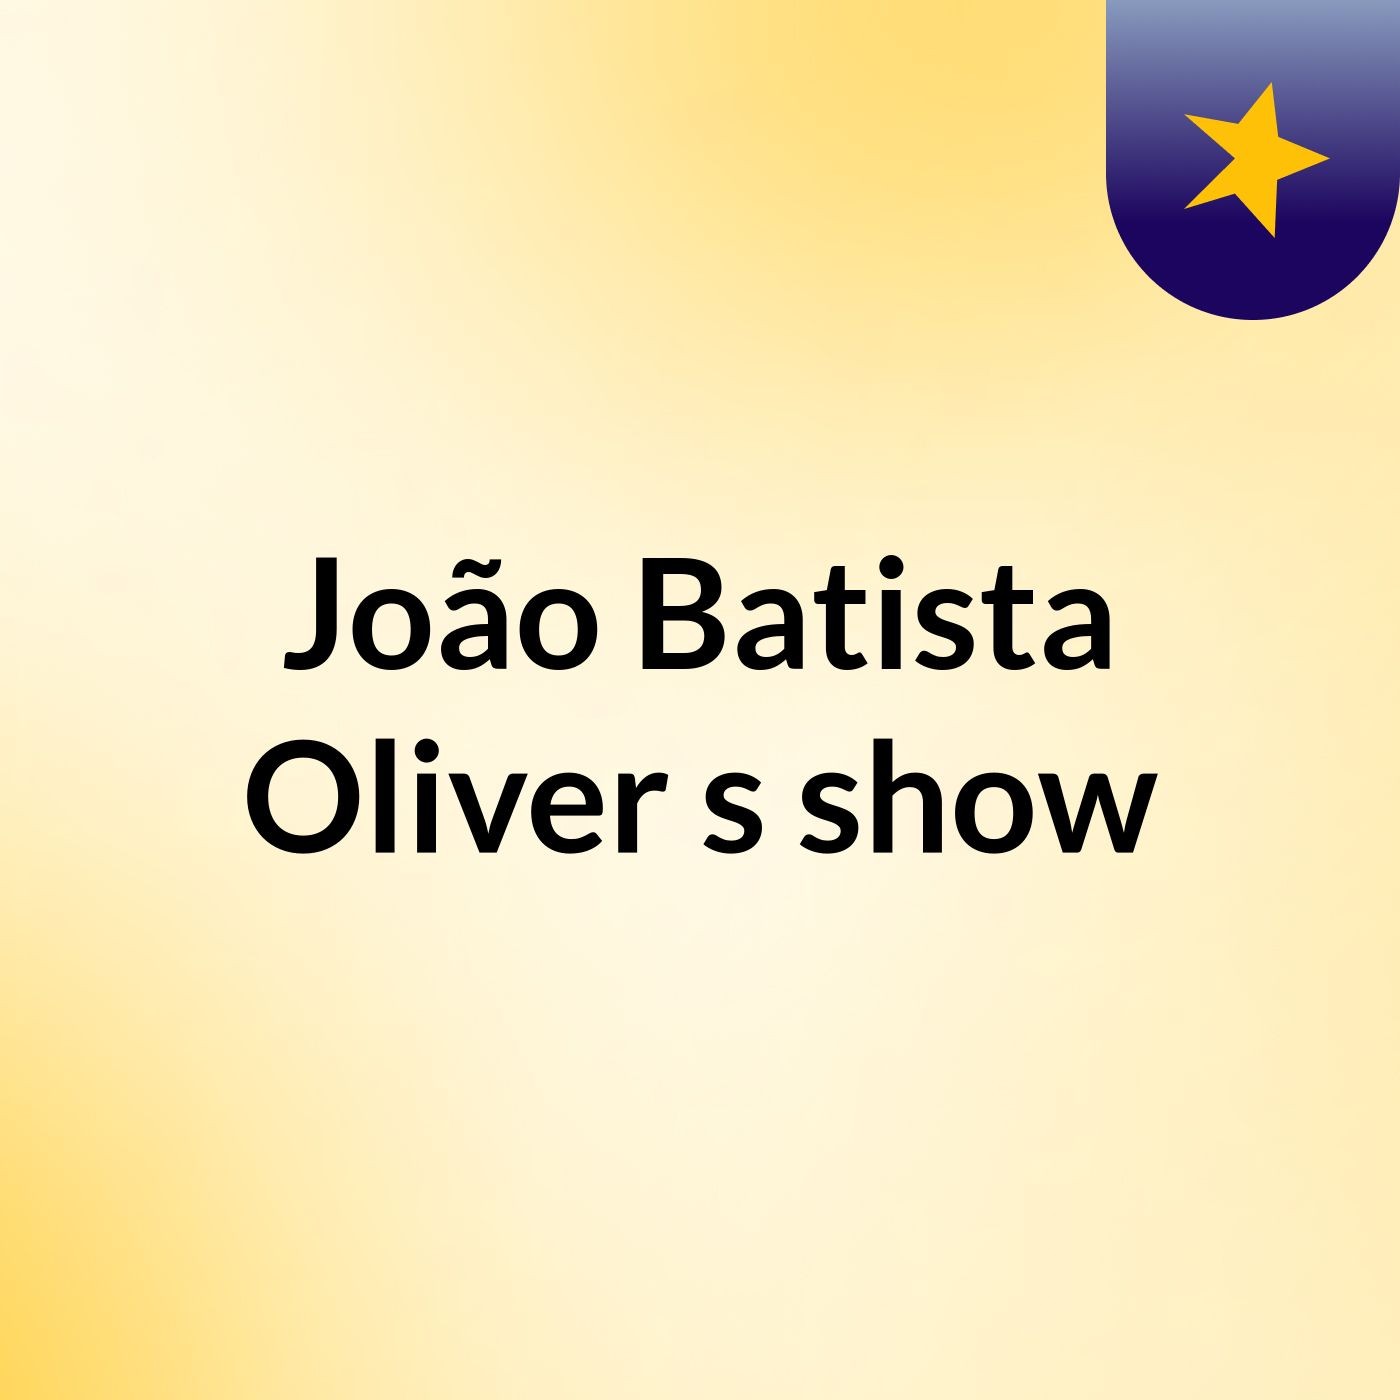 João Batista Oliver's show